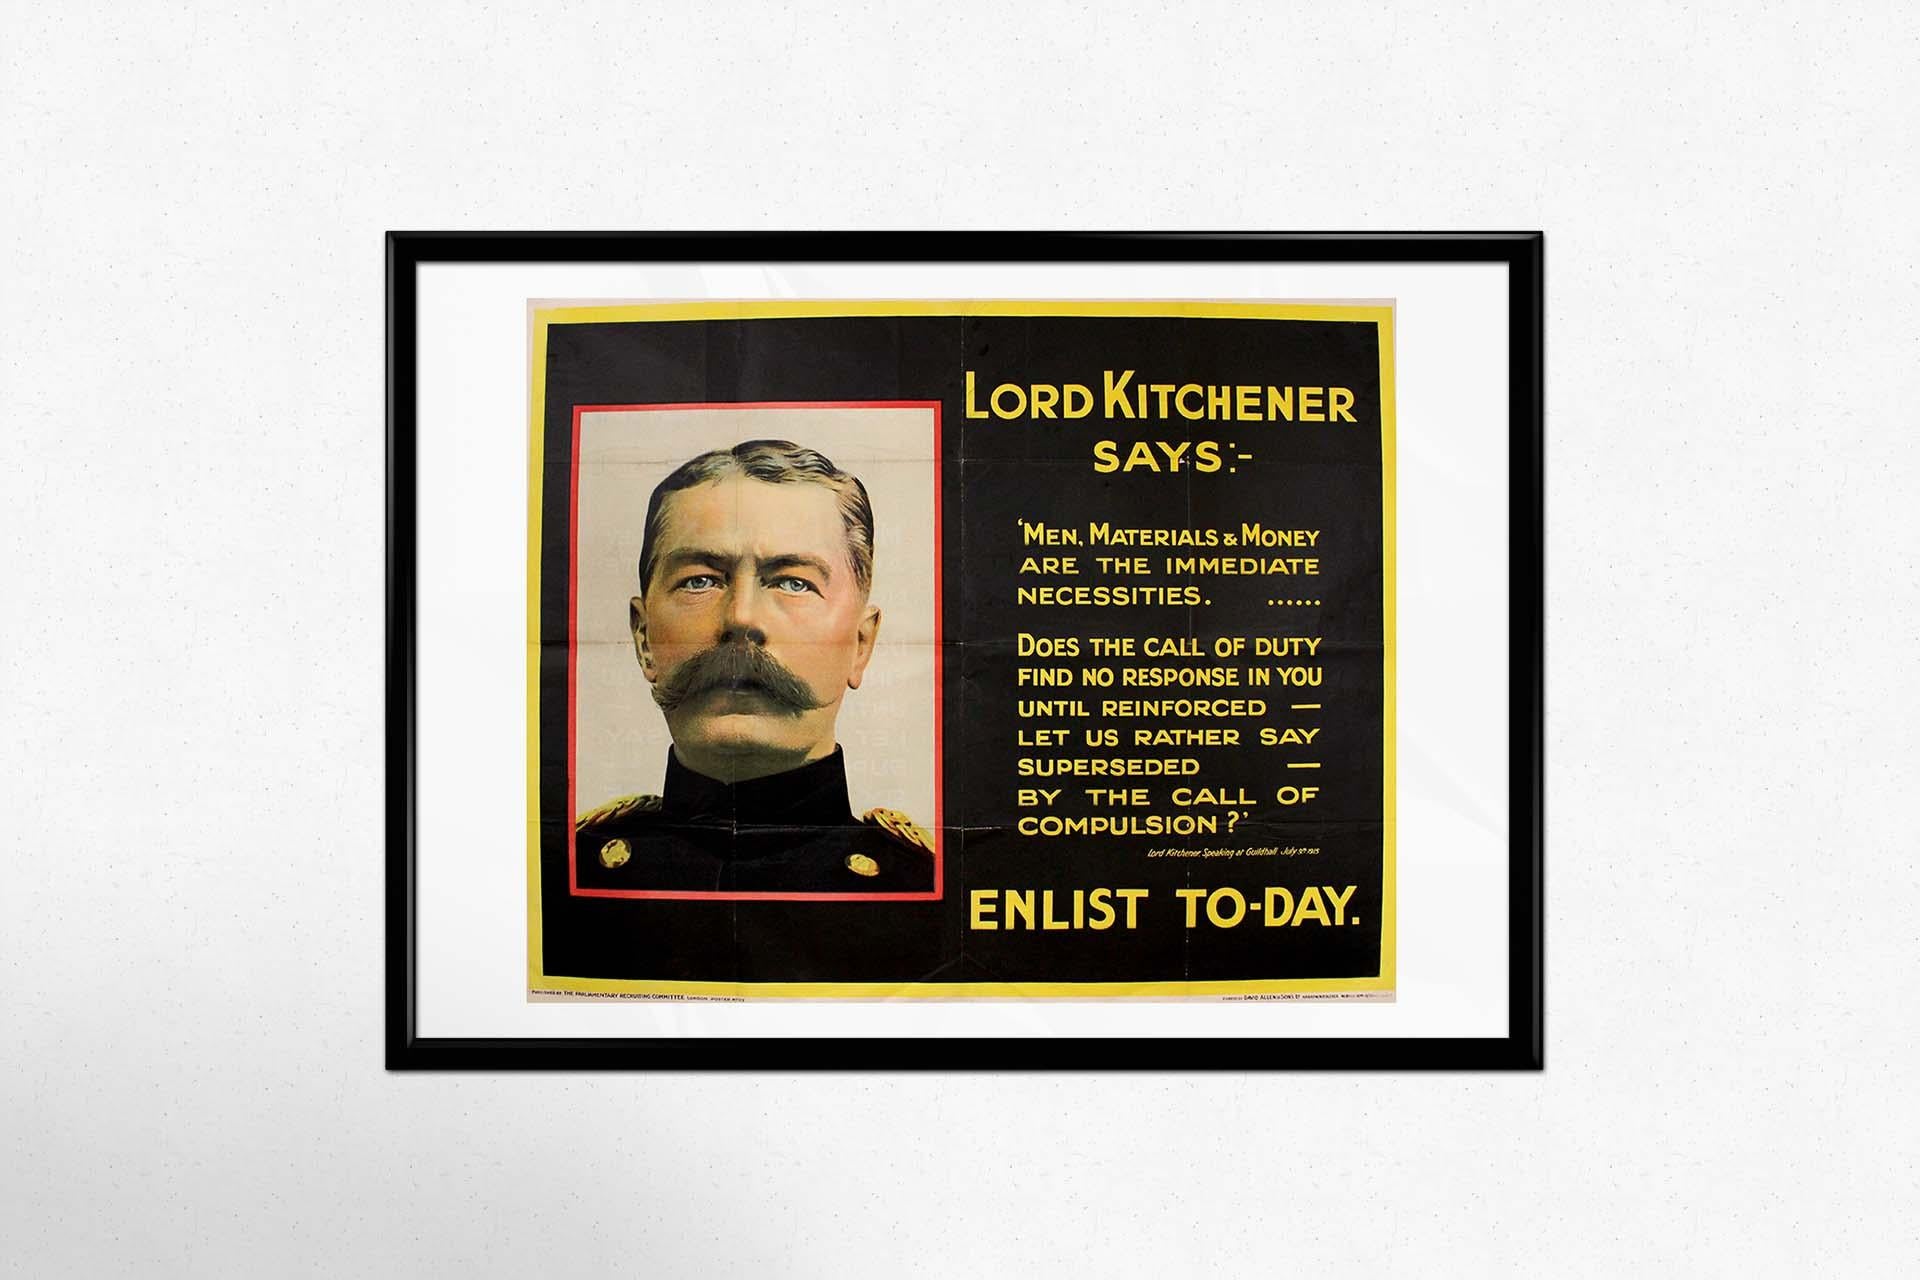 Das Originalplakat von 1915 mit Lord Kitcheners ikonischer Proklamation ist ein eindrucksvolles Artefakt der Propaganda für den Ersten Weltkrieg, das die Dringlichkeit und den Eifer der damaligen Zeit widerspiegelt. Vor dem Hintergrund des Großen